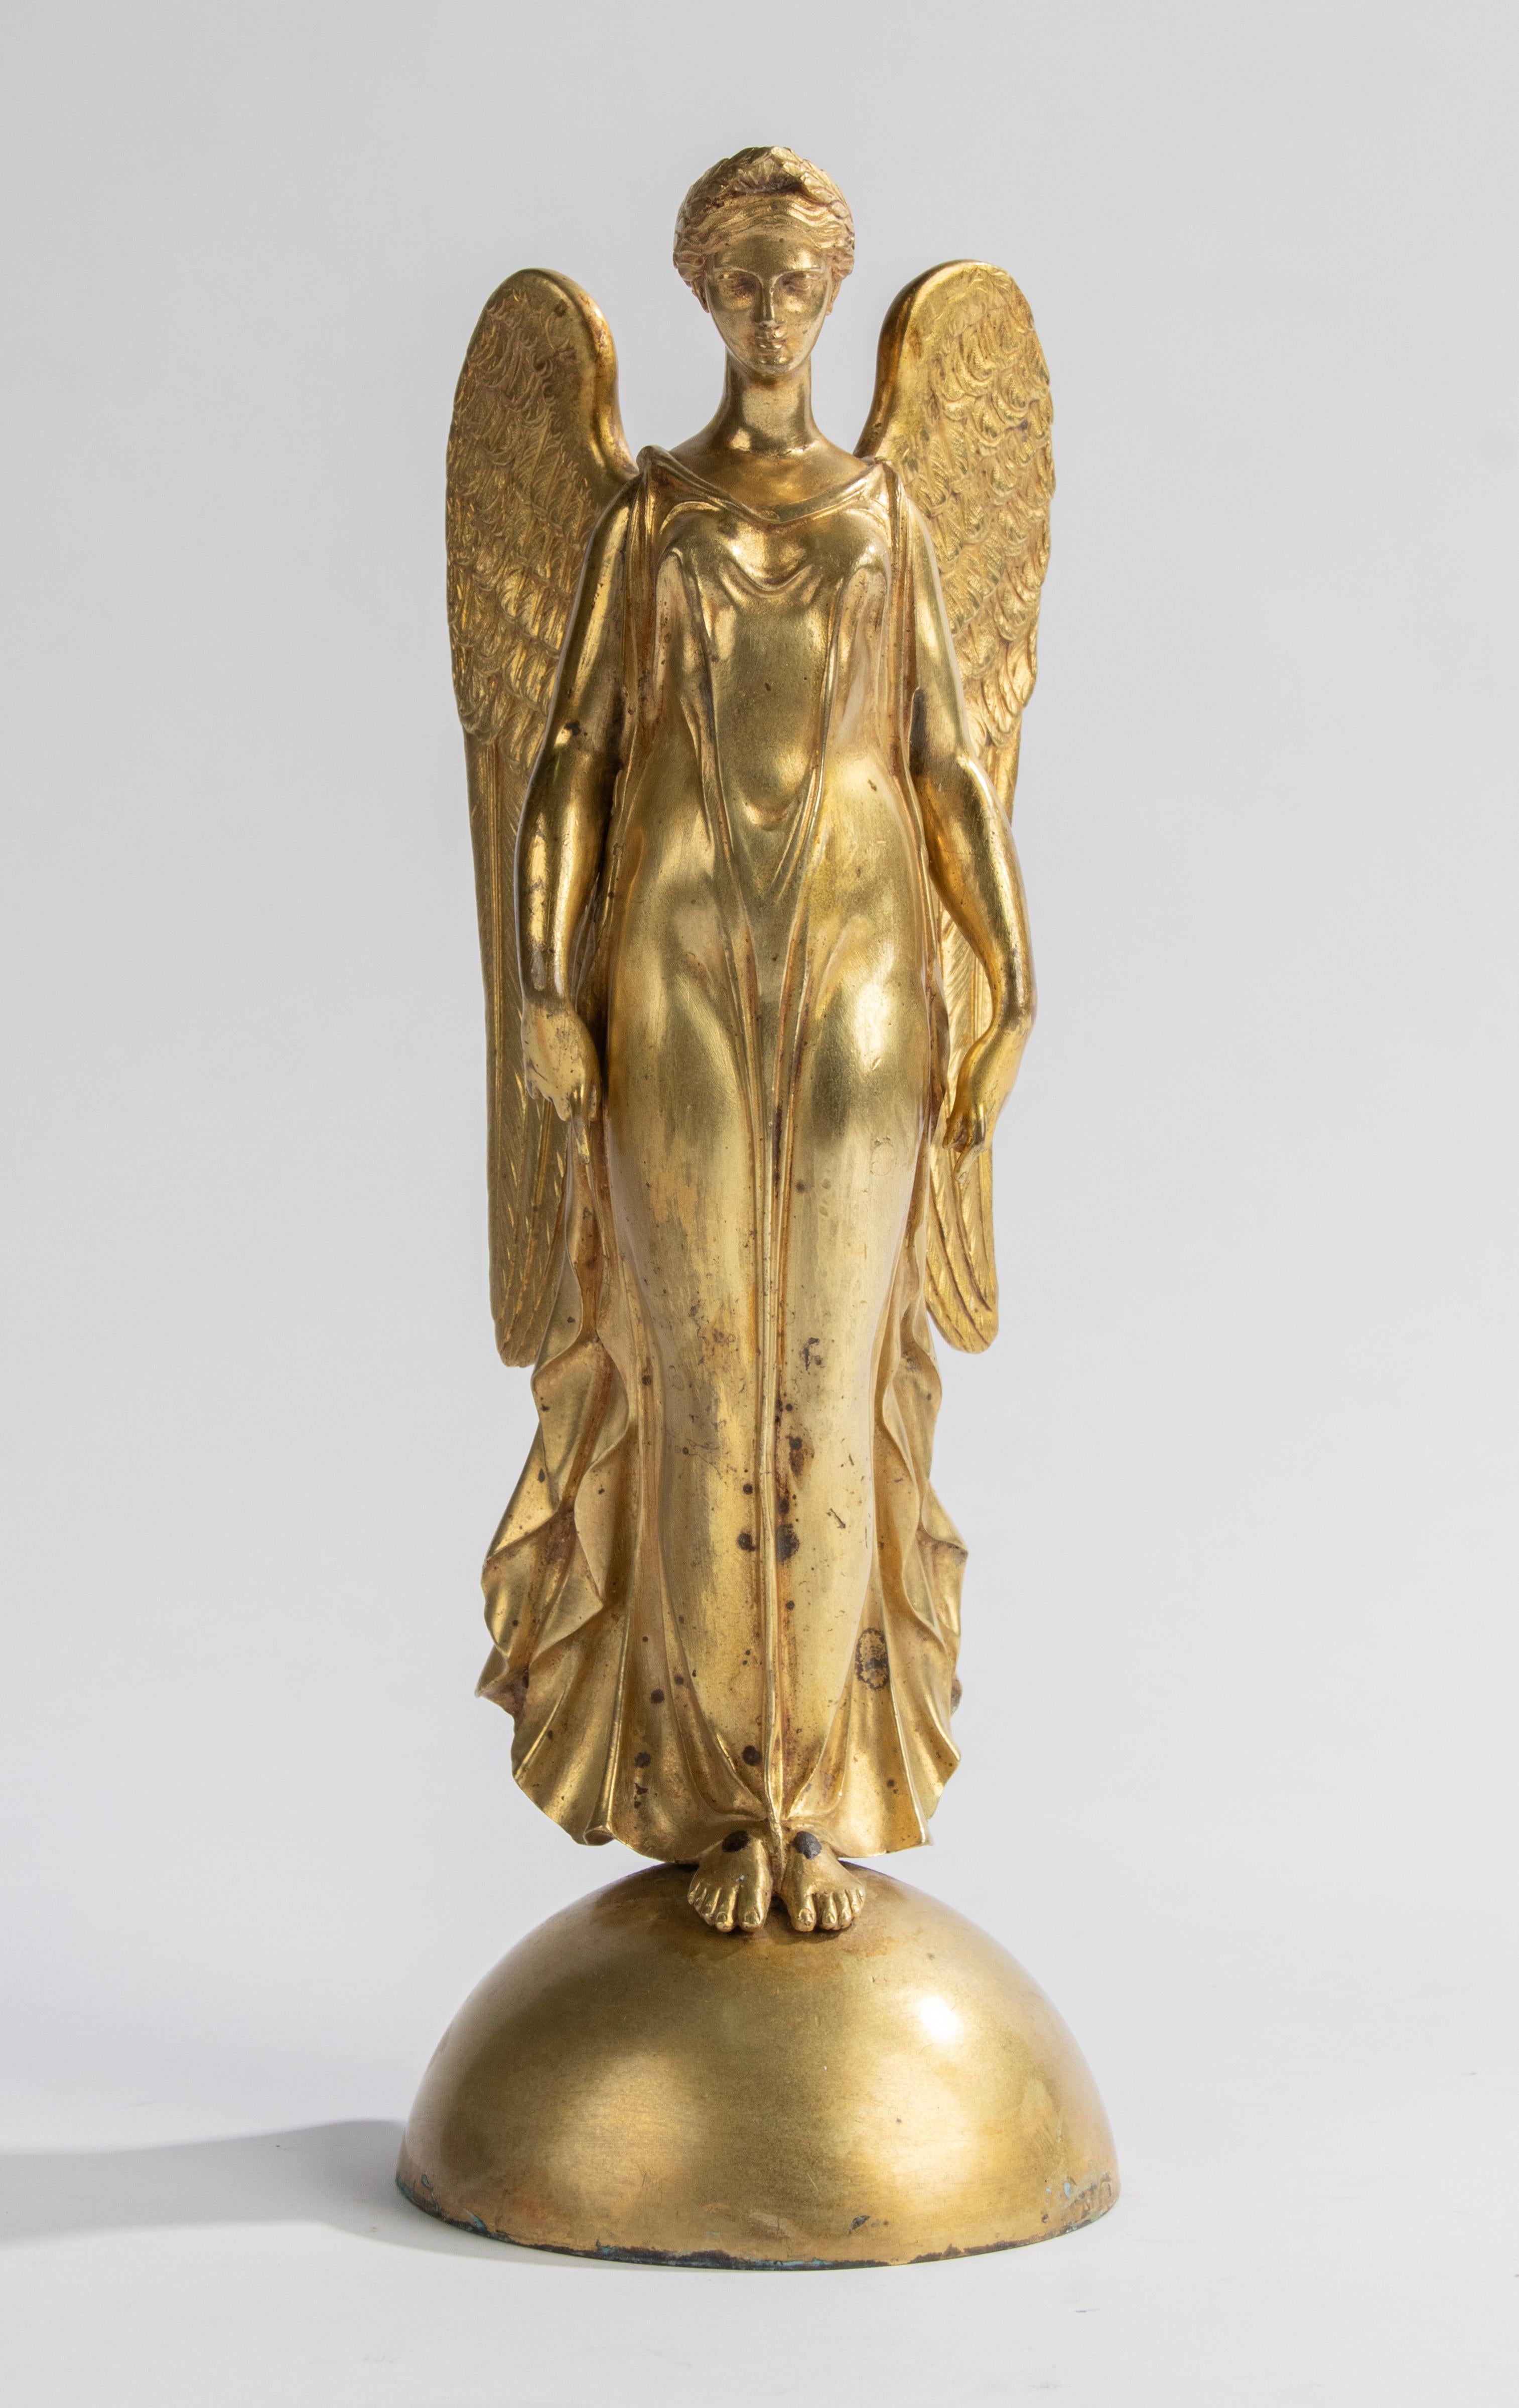 Une sculpture gracieuse d'un ange ailé. La sculpture est réalisée en bronze coulé avec une patine dorée à l'or fin. Sur un hémisphère, l'intérieur de la sphère est rempli de plâtre, pour une position stable. Fabriqué en France, 1870-1880
Dimensions